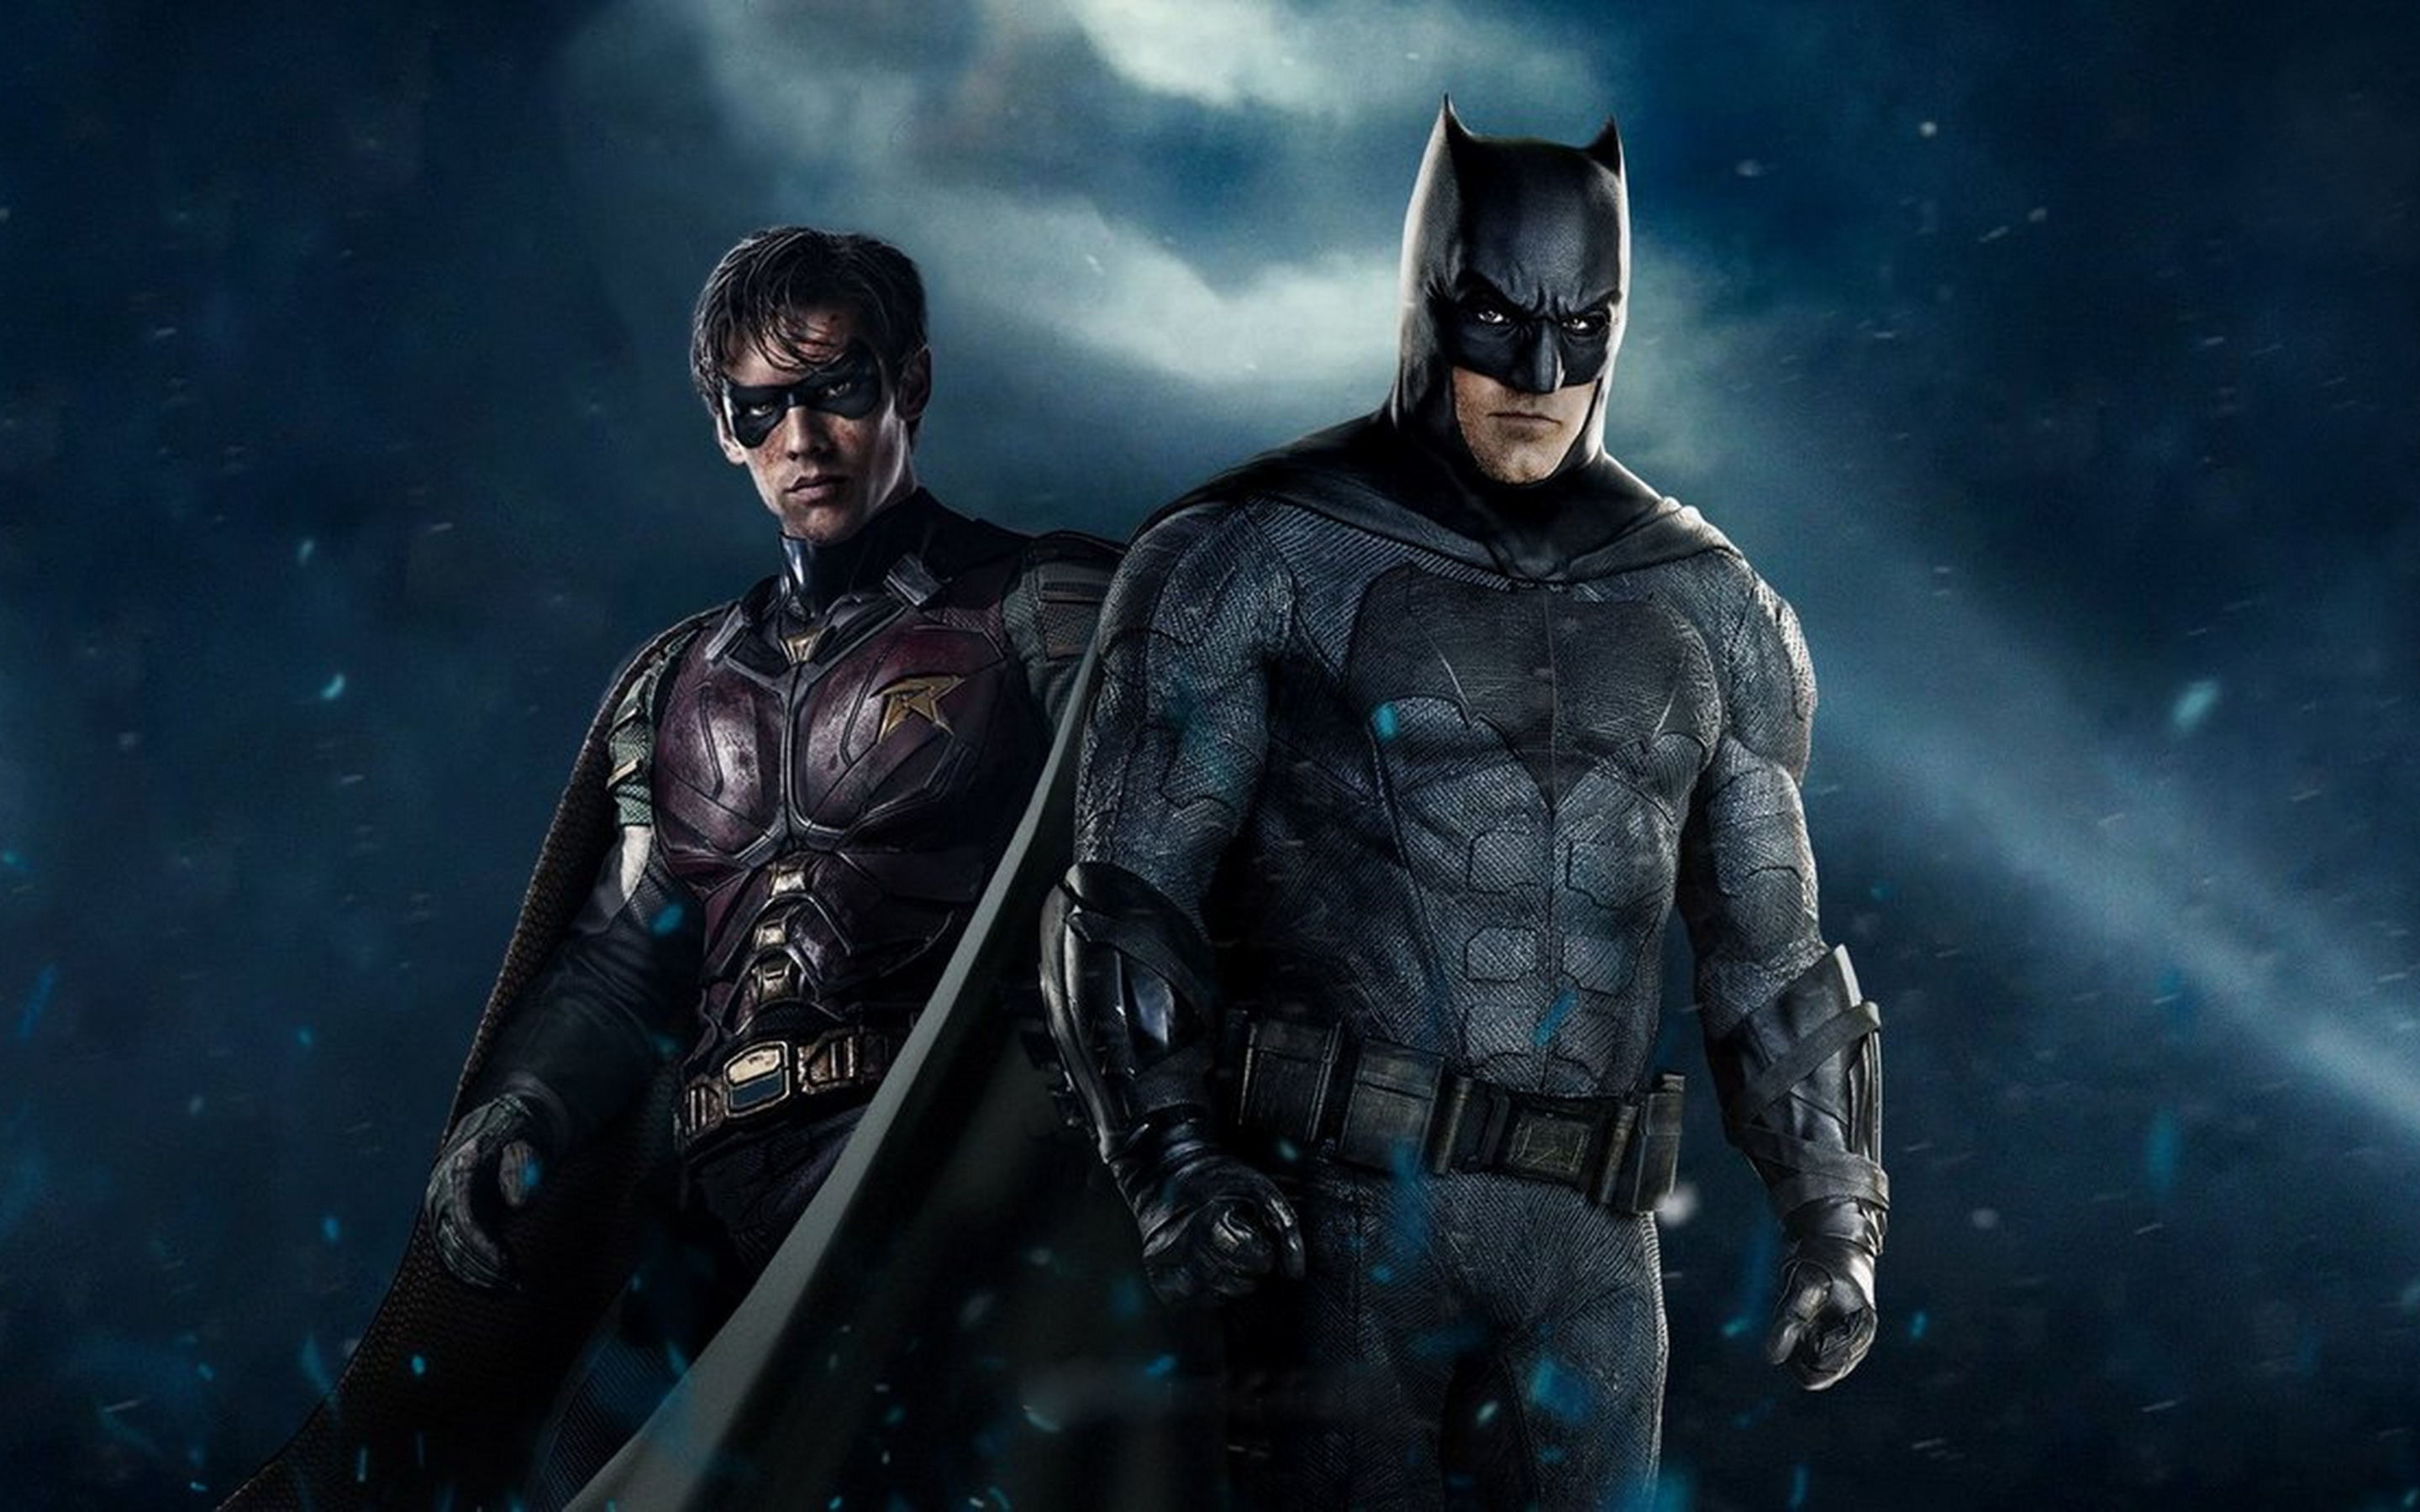 Titãs | Vídeo de bastidores revela detalhes do uniforme do Batman na série